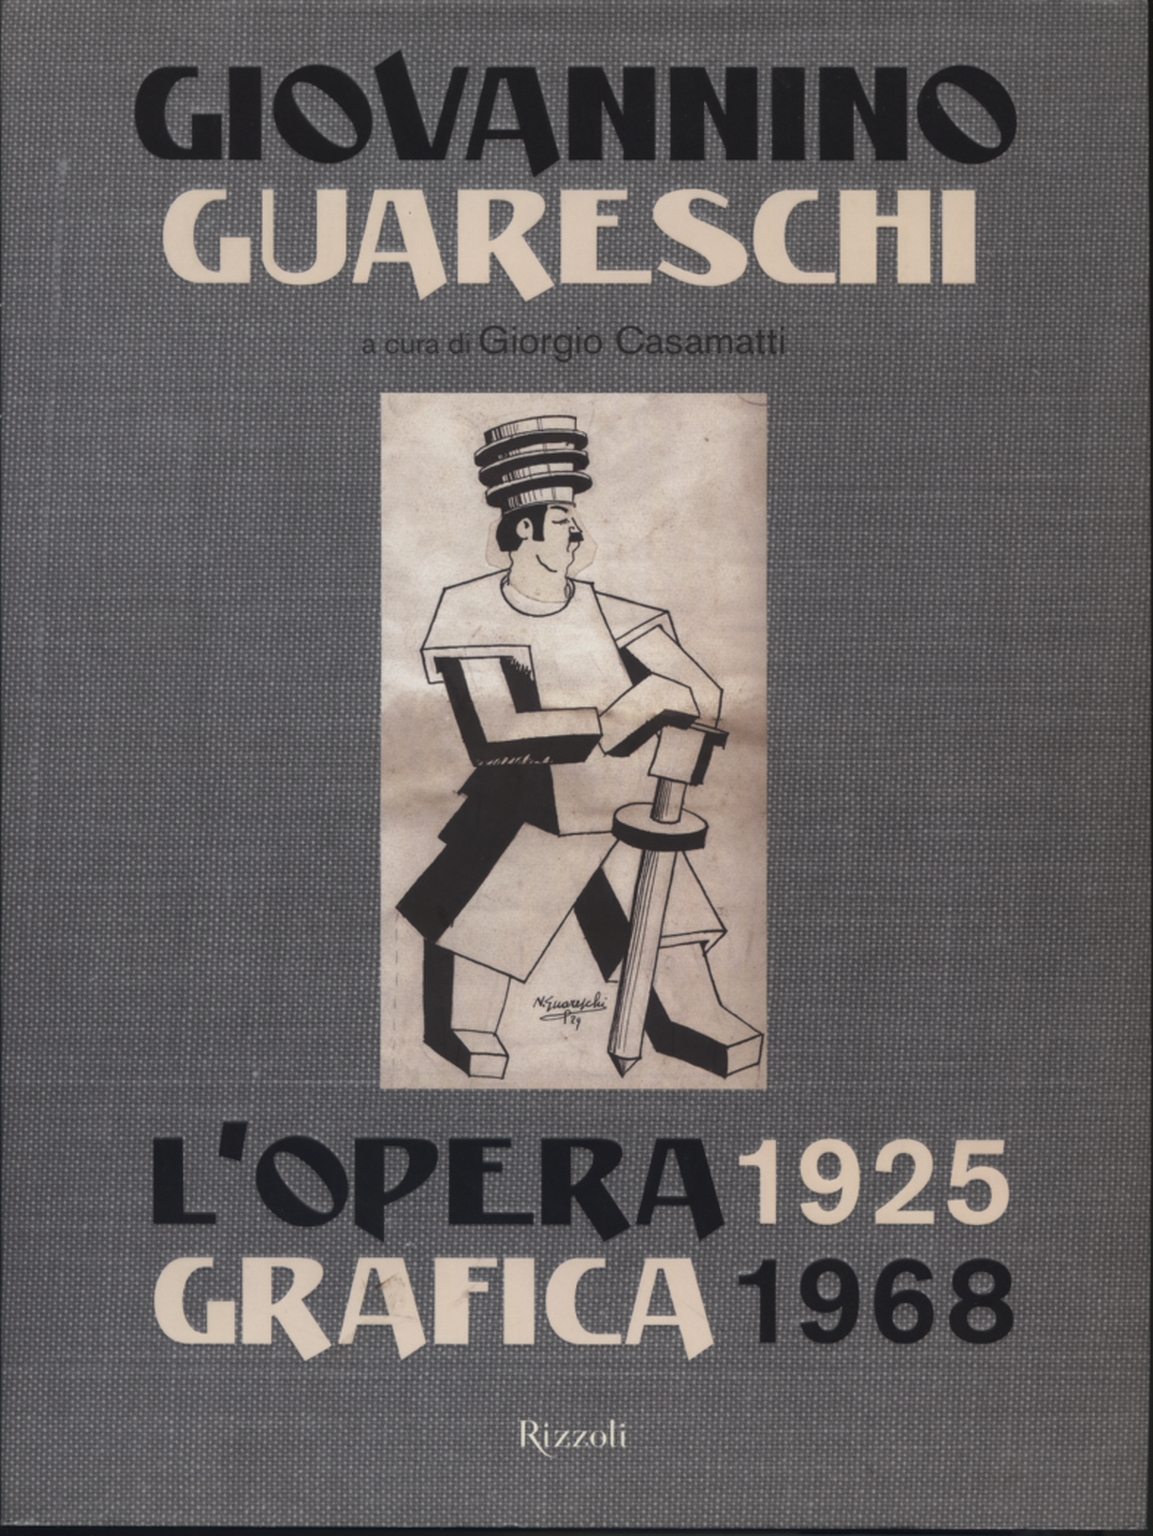 Das grafische Werk 1925-1968, Giovannino Guareschi